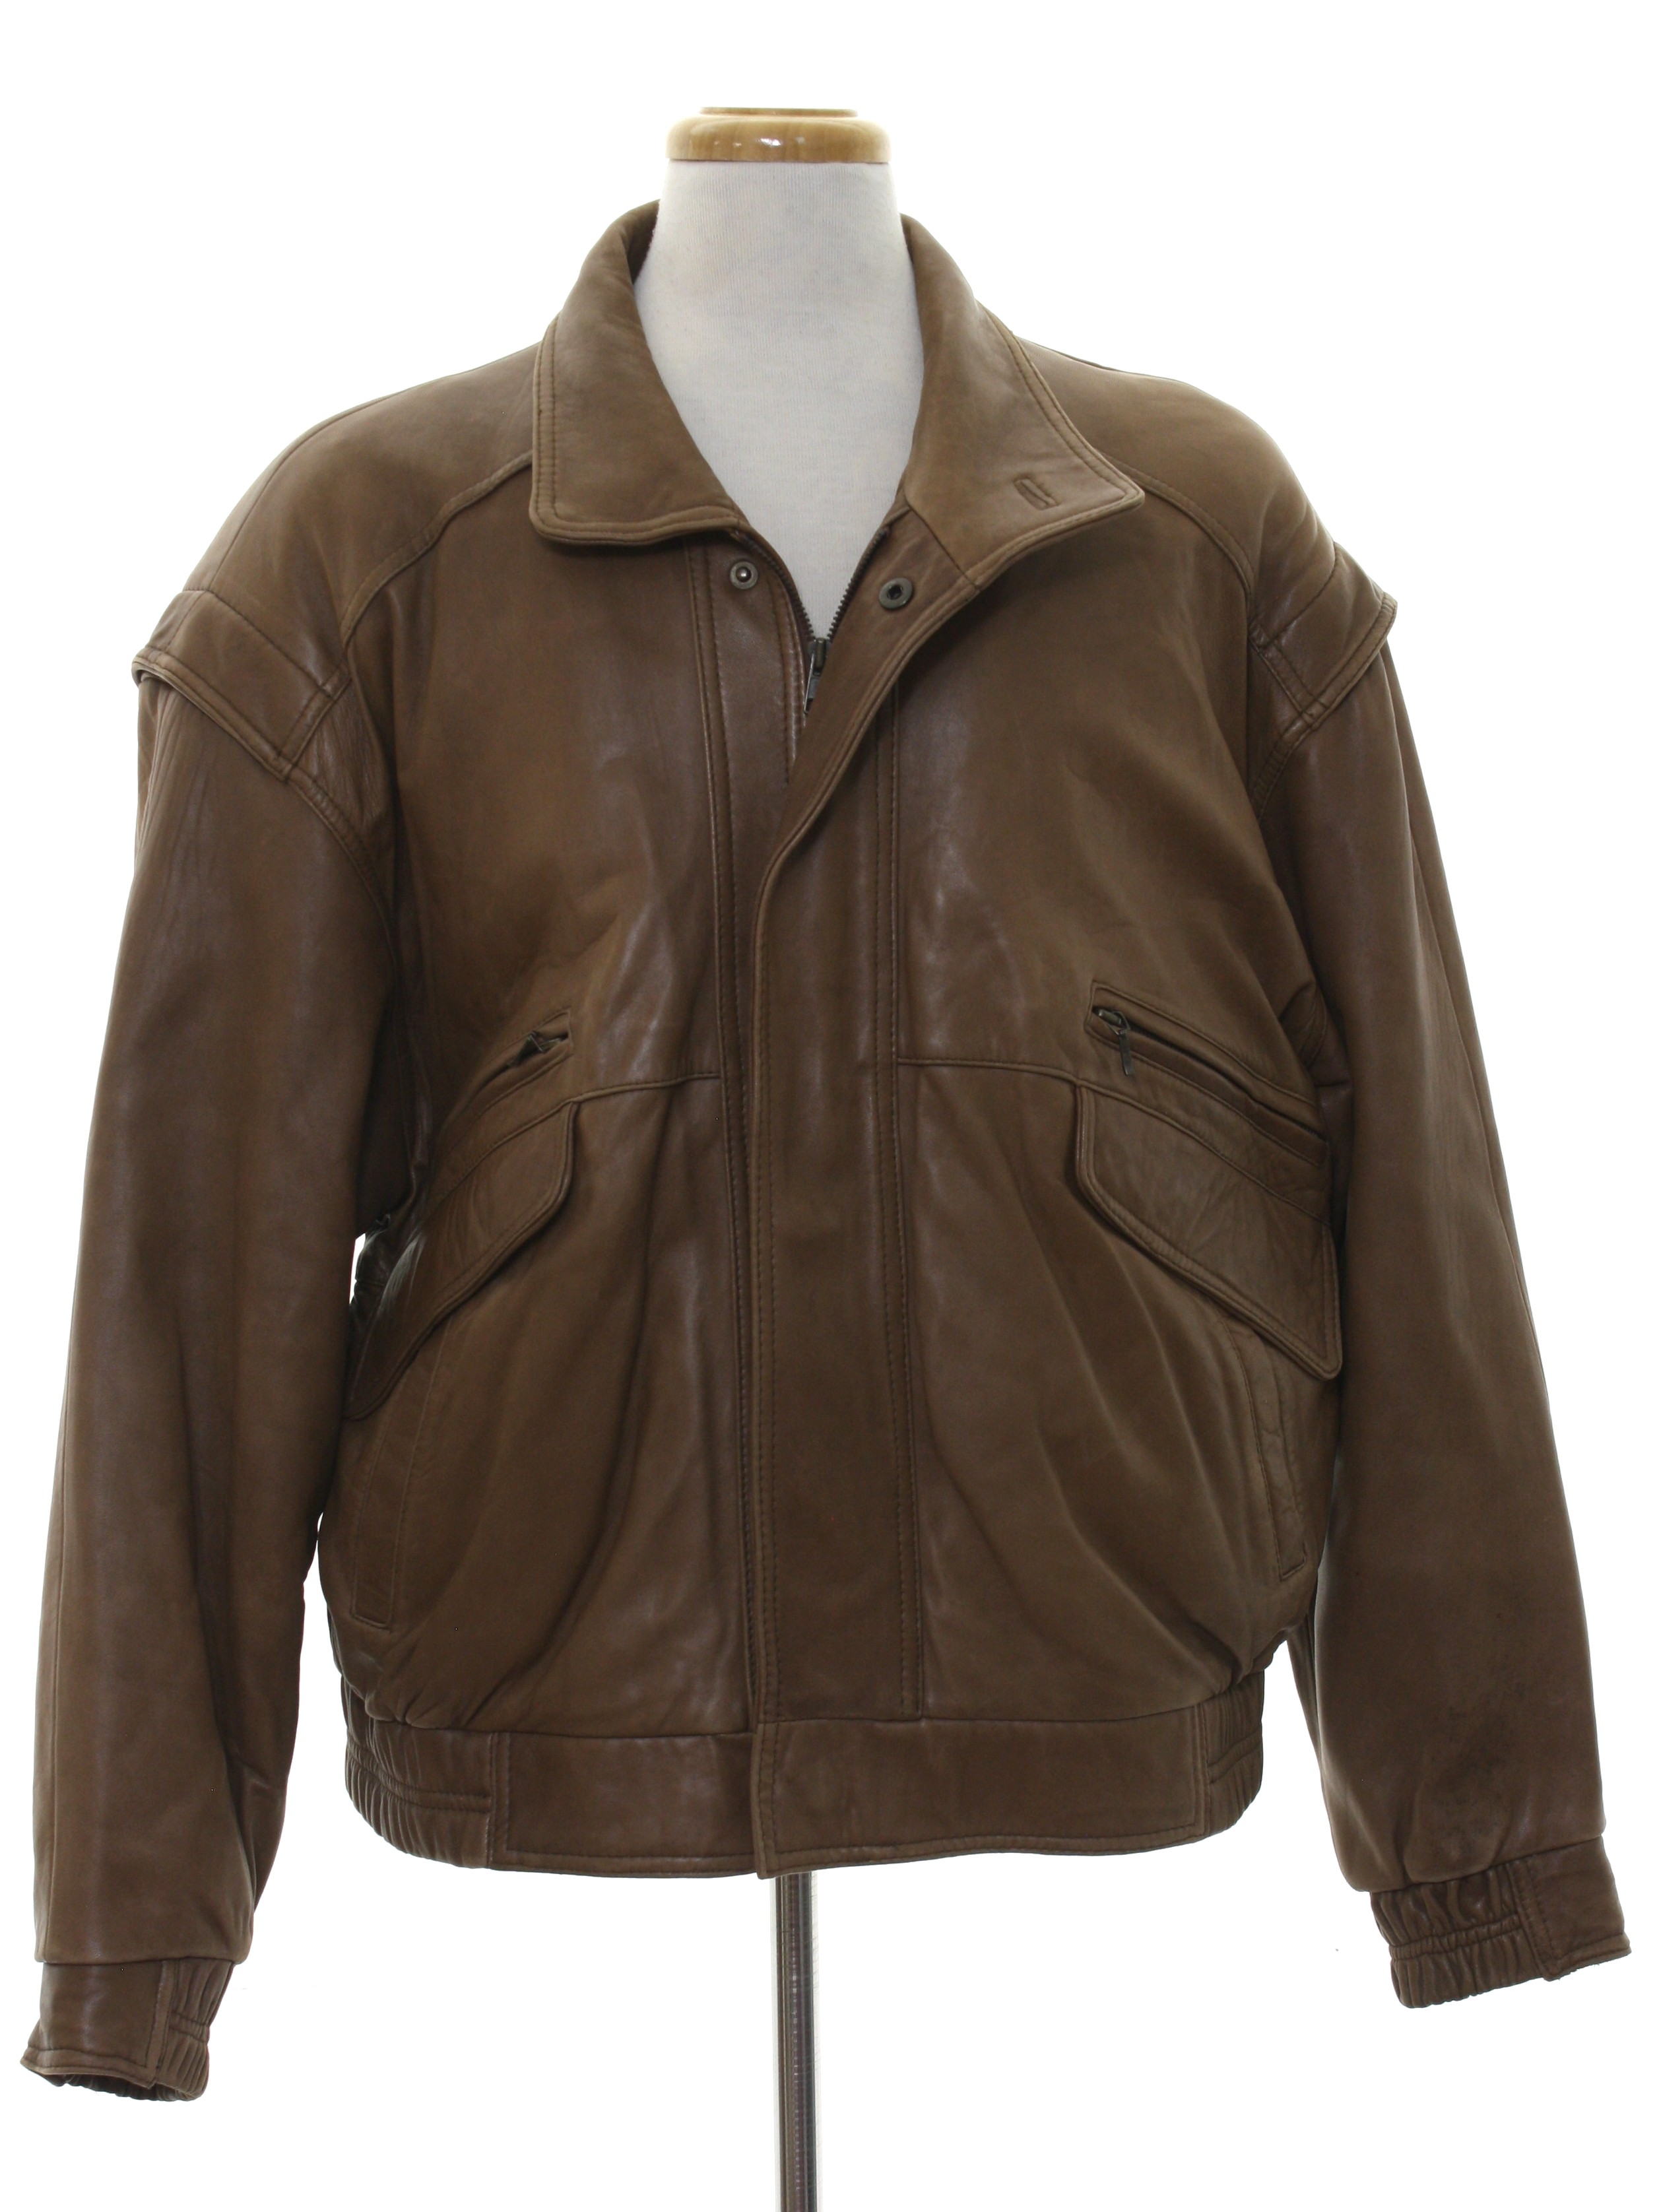 Van Heusen 417 80's Vintage Leather Jacket: 80s -Van Heusen 417- Mens ...